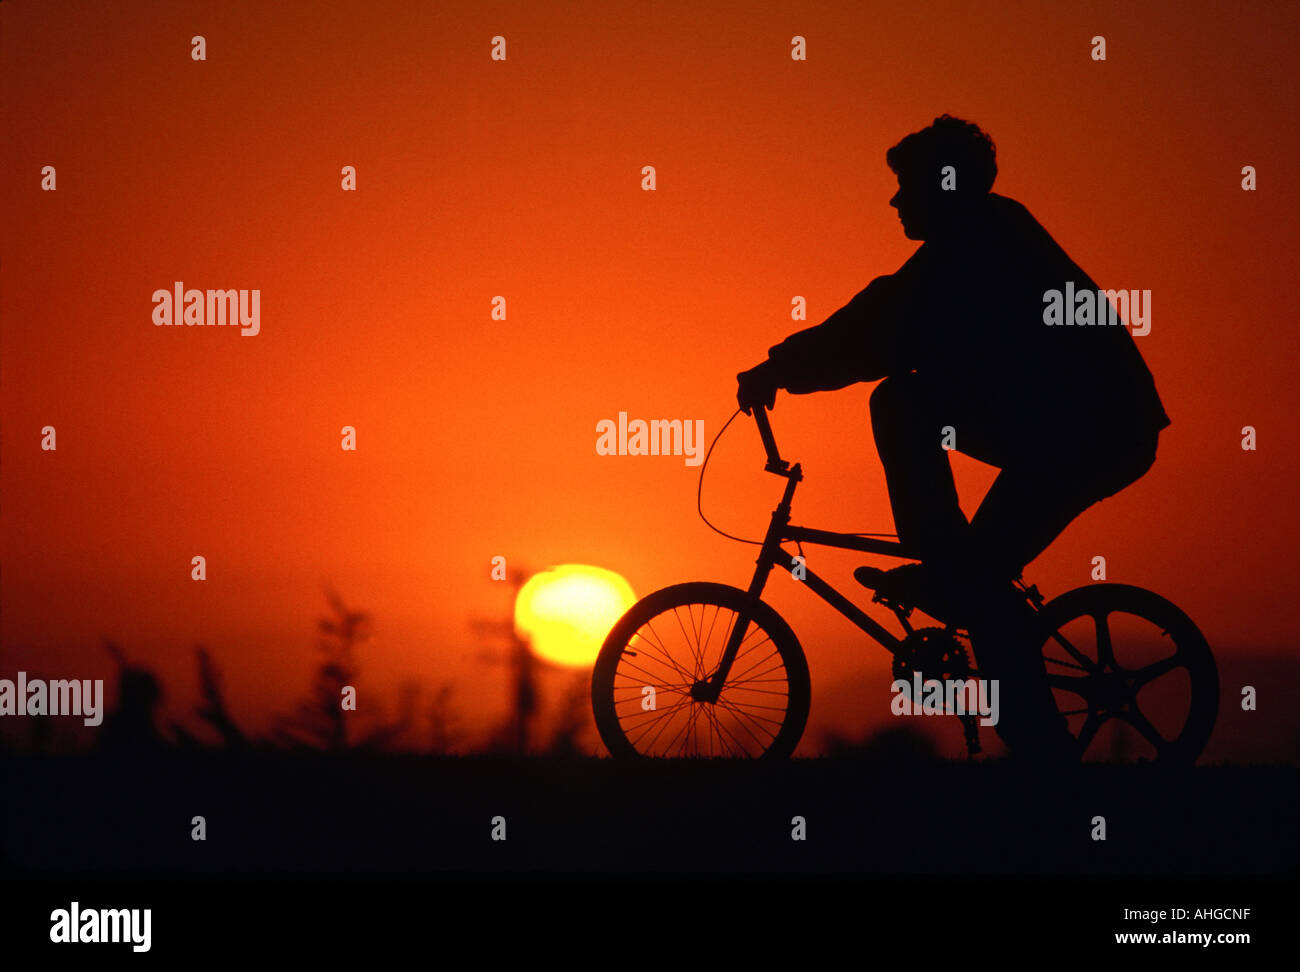 La silhouette d'un garçon et vélo avec fond coucher de soleil rouge Banque D'Images